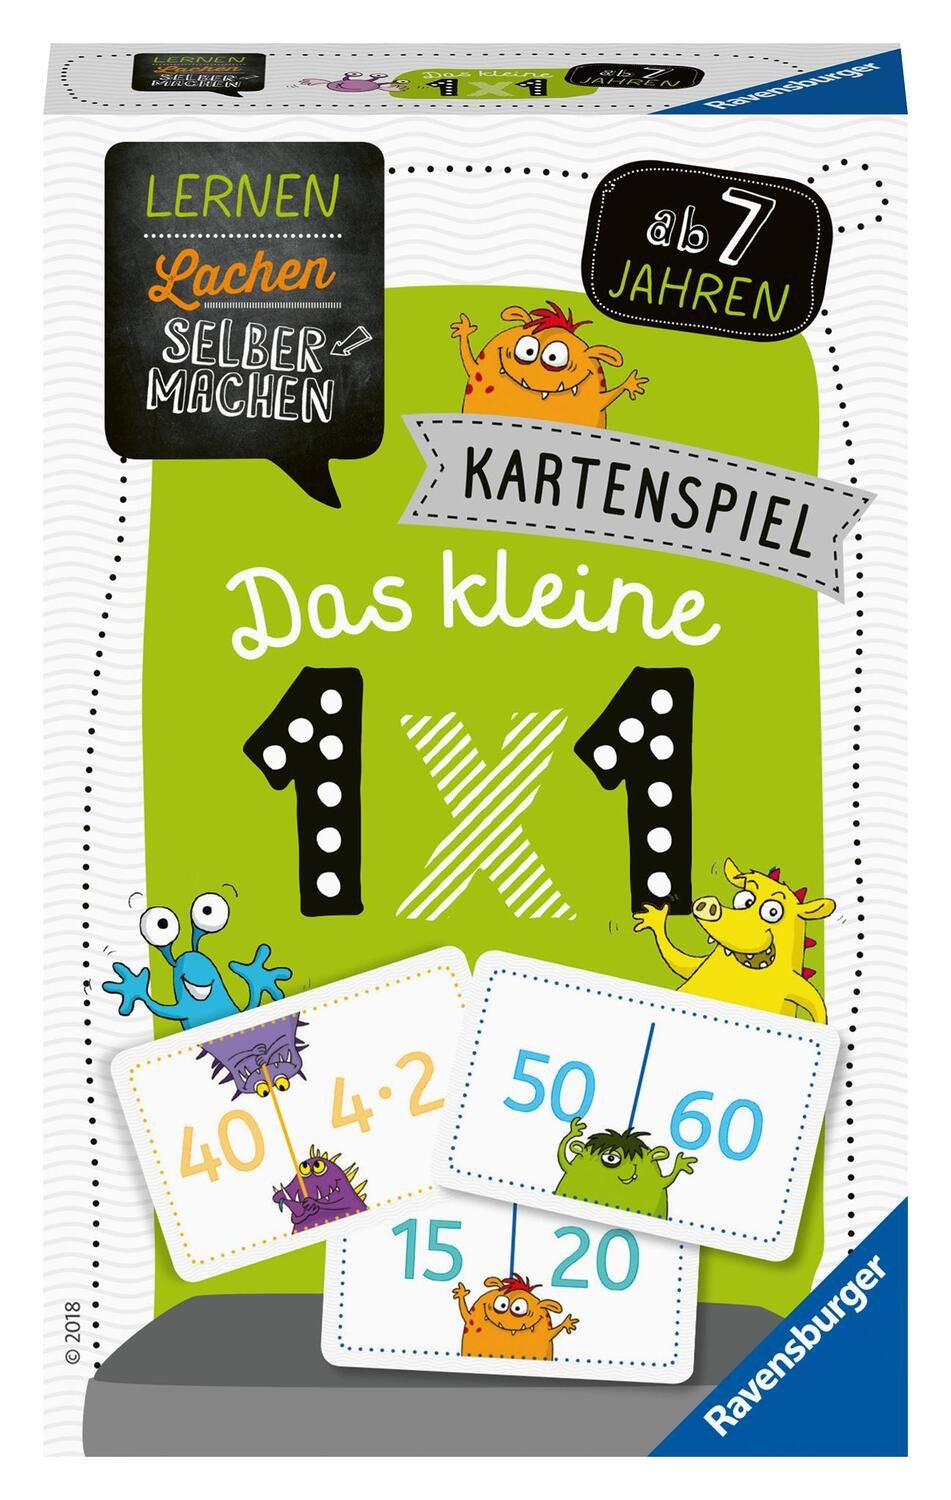 Ravensburger Spiel, Lernen Lachen Selbermachen: Kartenspiel Das kleine 1 x 1